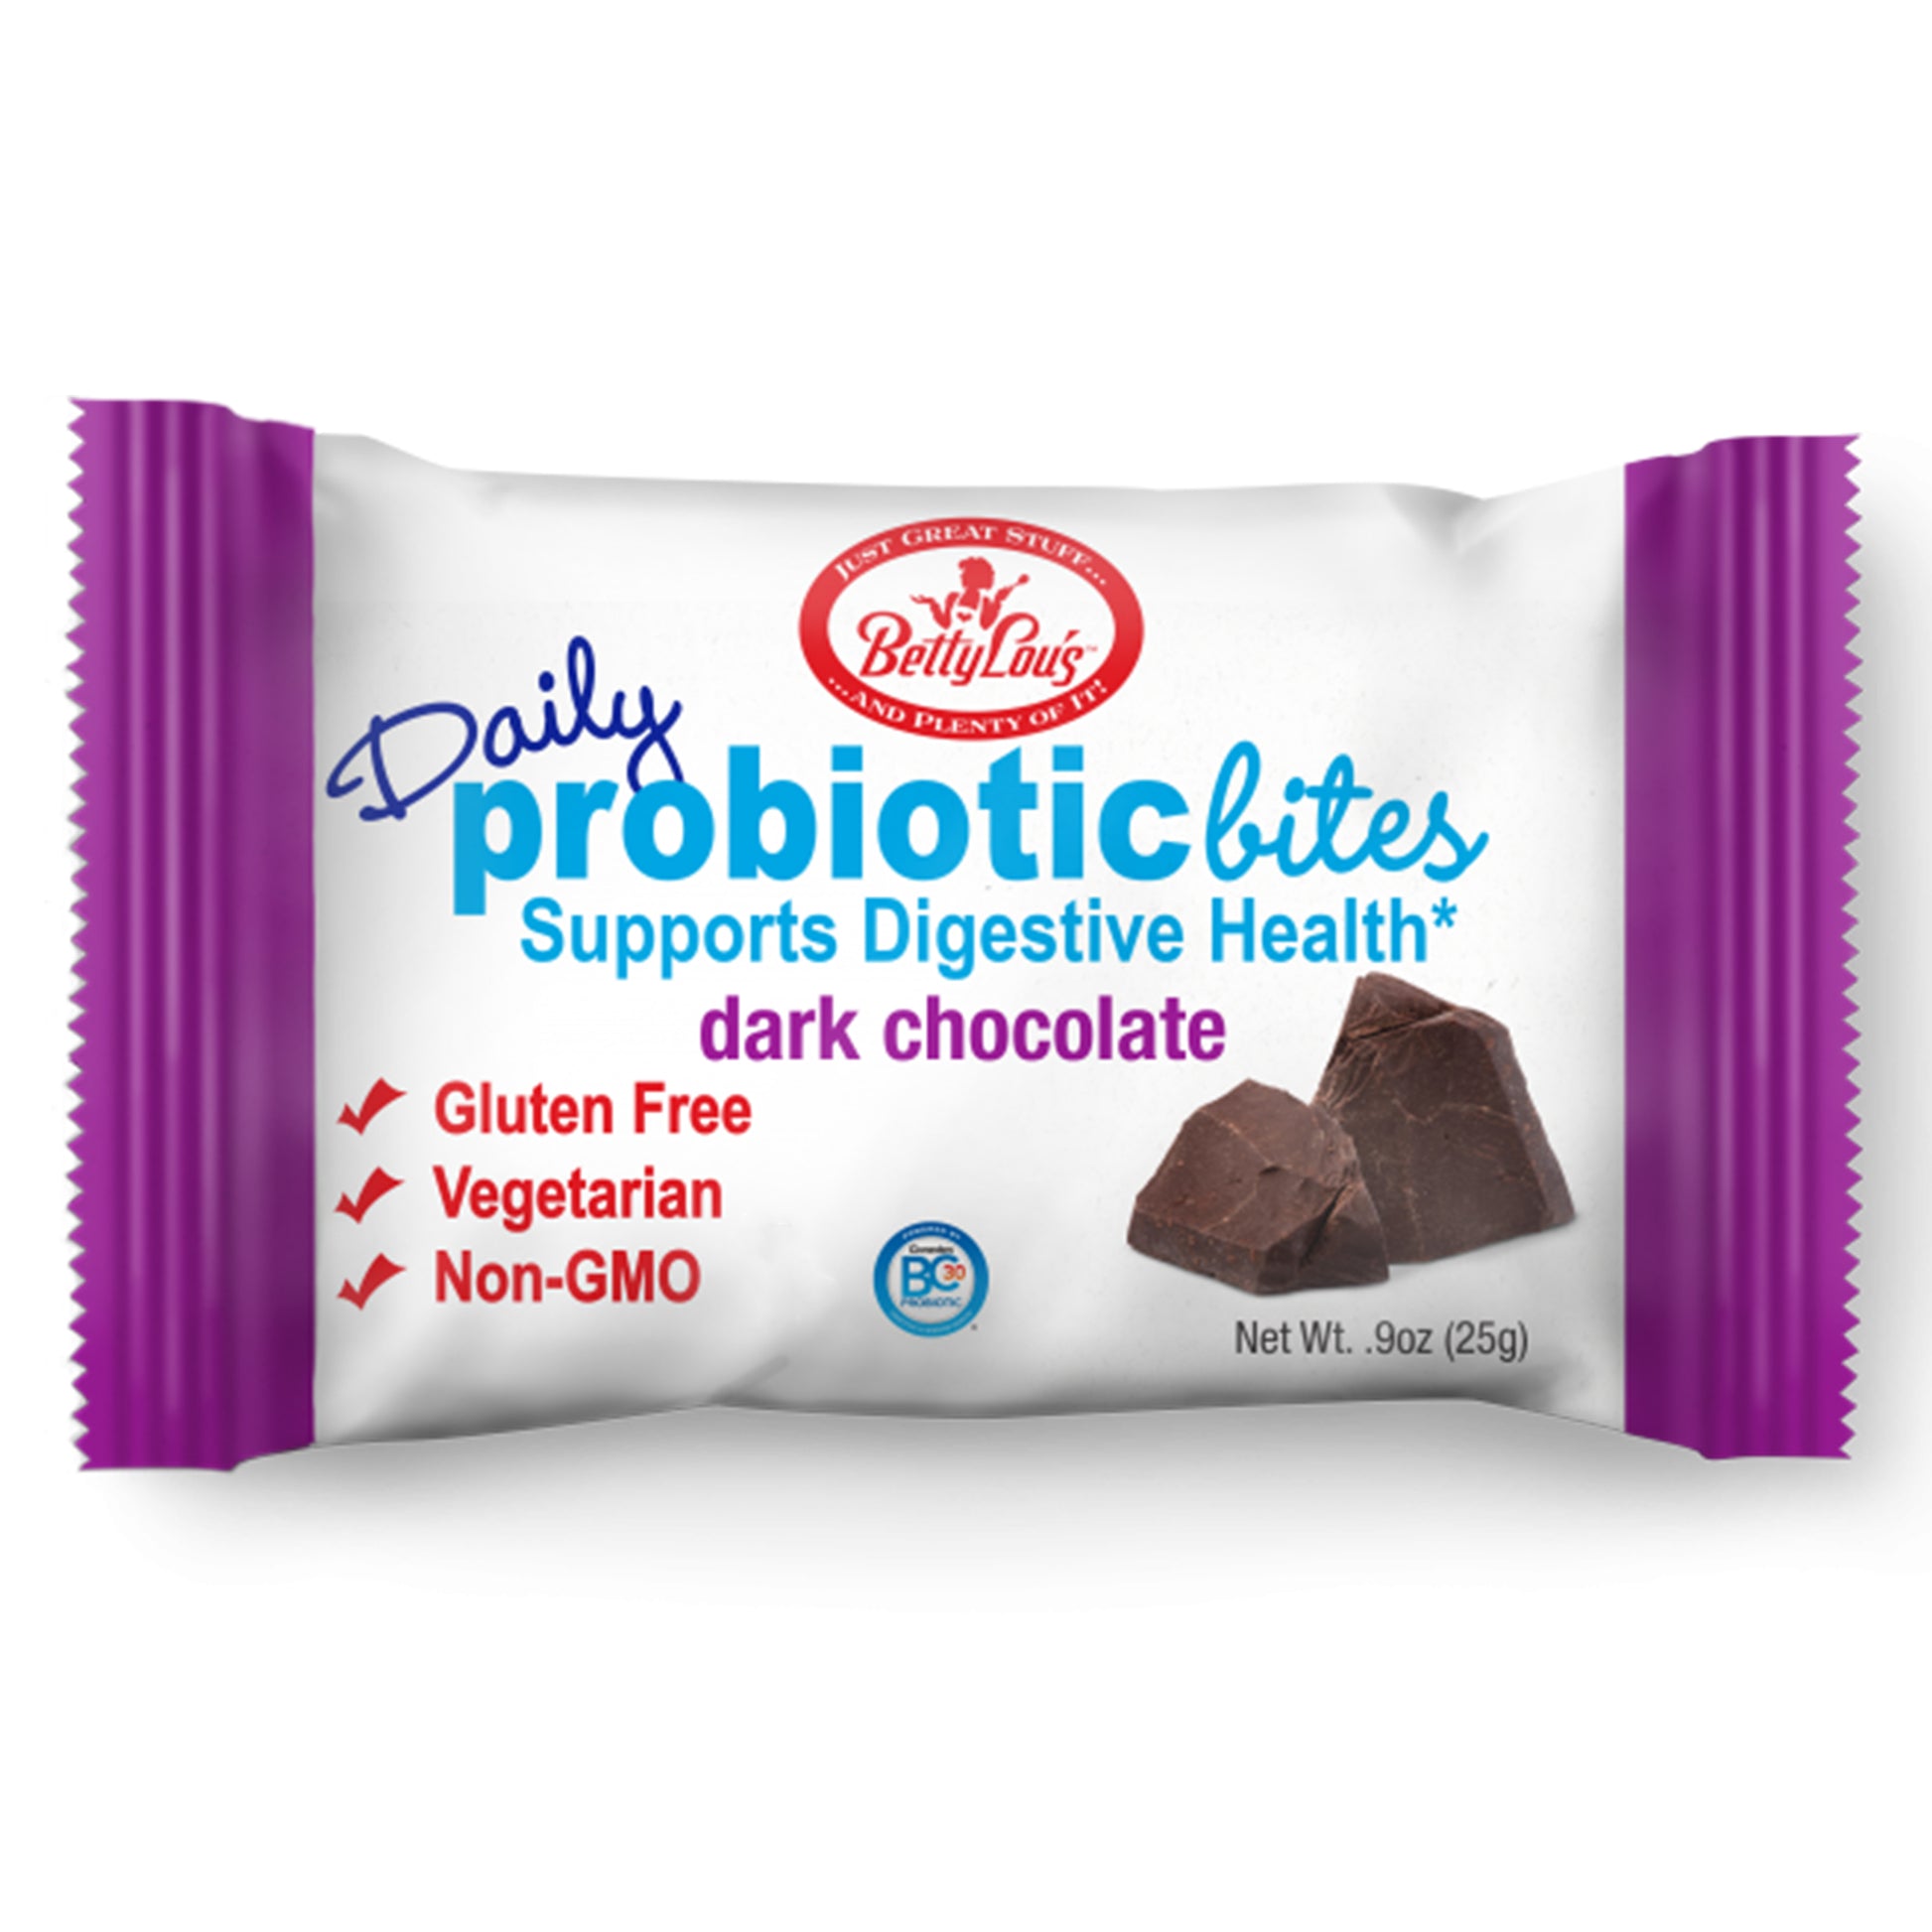 Probiotic Bites dark chocolate